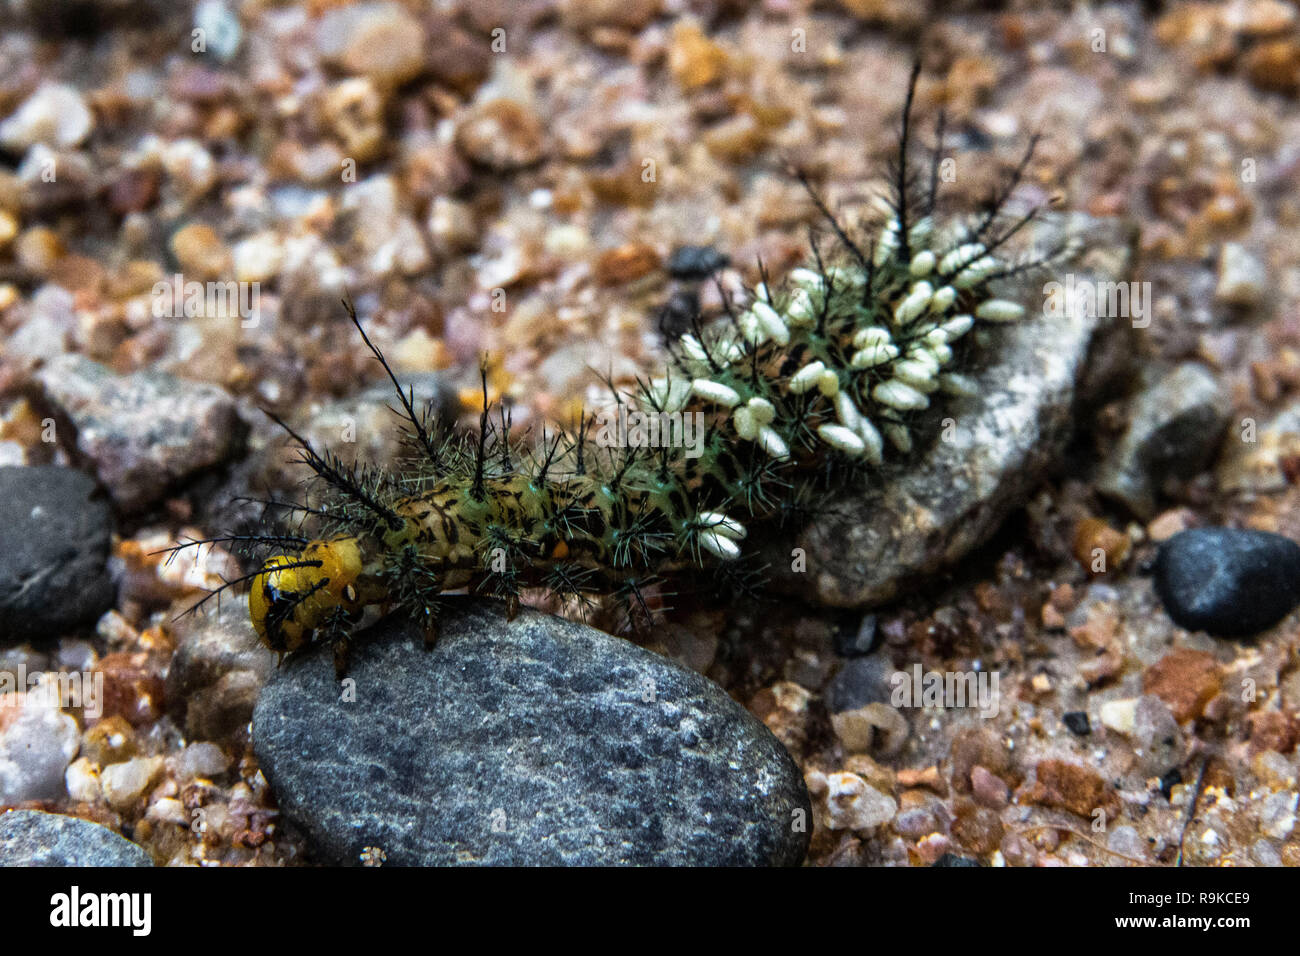 A poisoning caterpillar with its larvas, Podocarpus National park, Ecuador Stock Photo